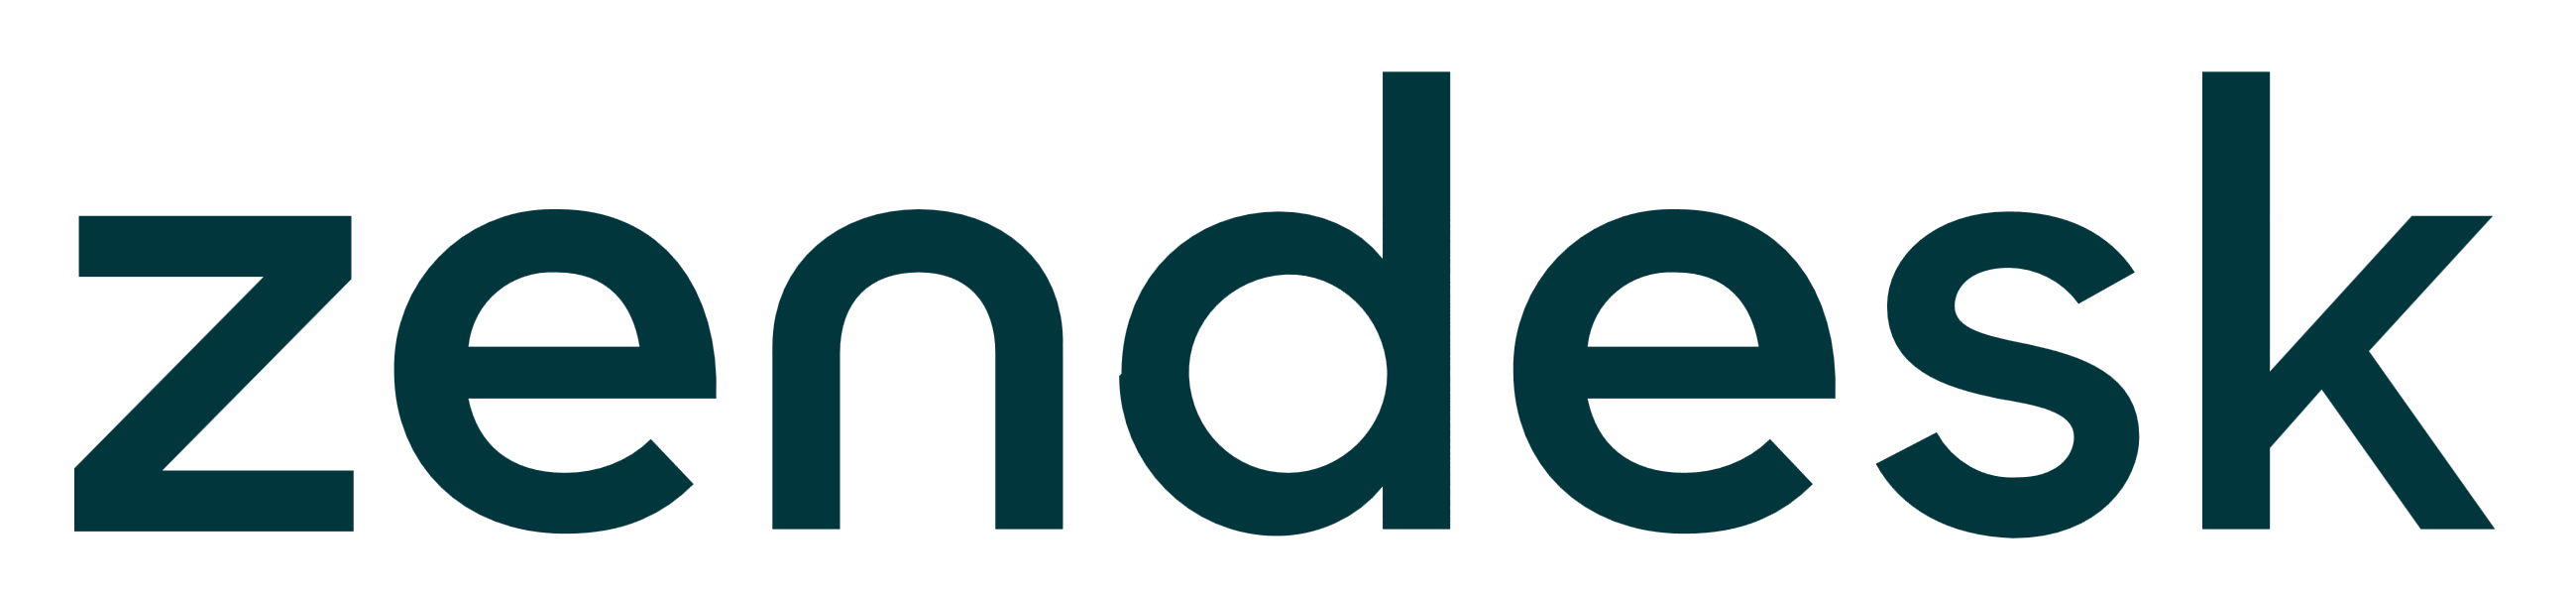 Zendesk Logo Vector PNG - 101055